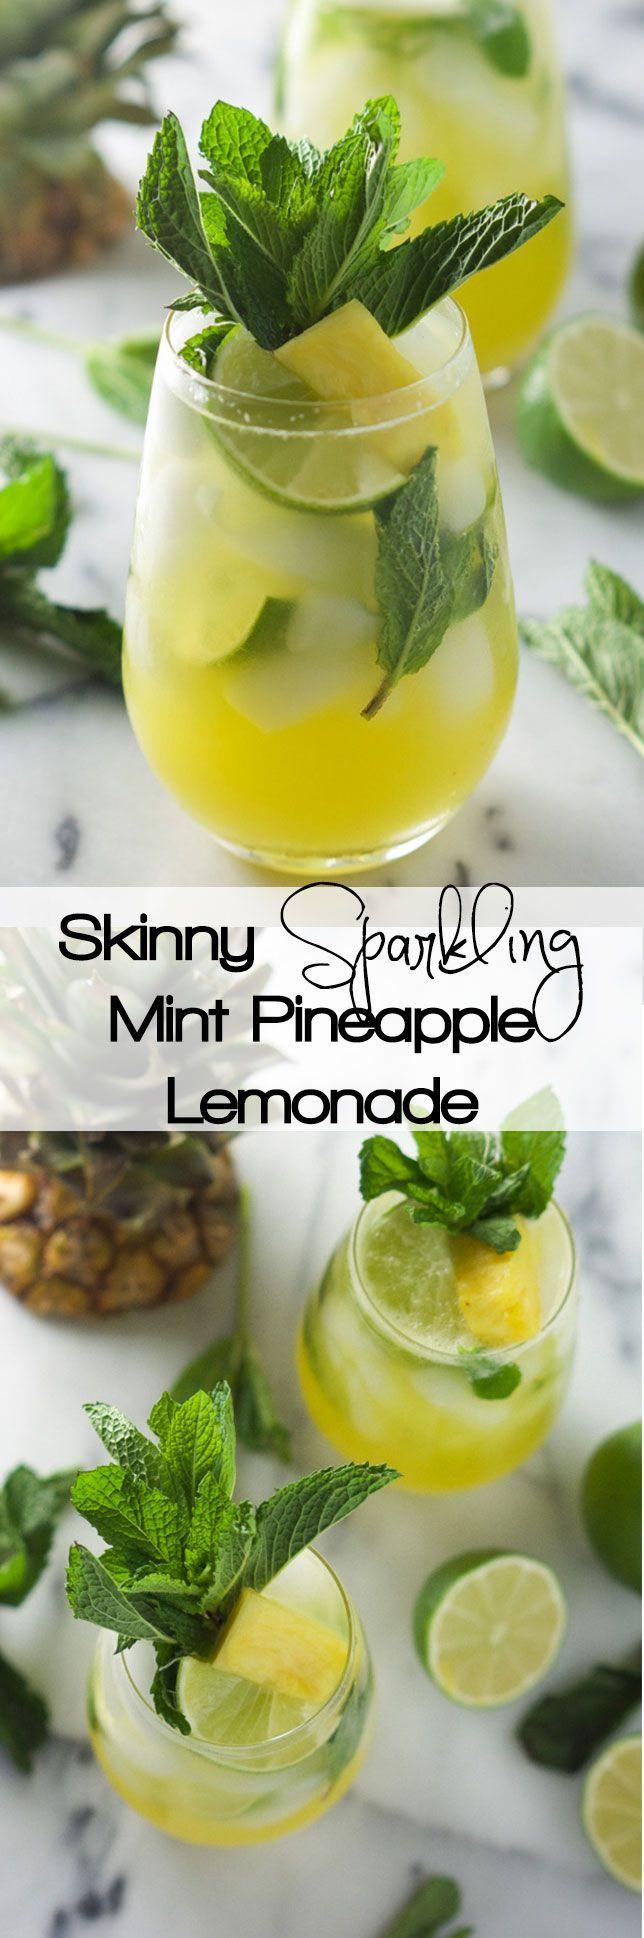 Wedding - Skinny Sparkling Mint Pineapple Lemonade